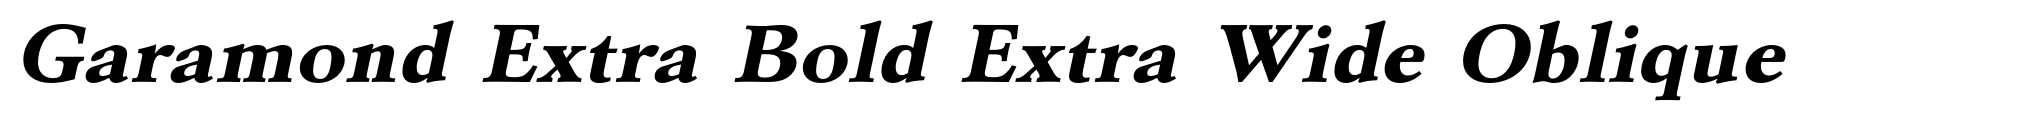 Garamond Extra Bold Extra Wide Oblique image